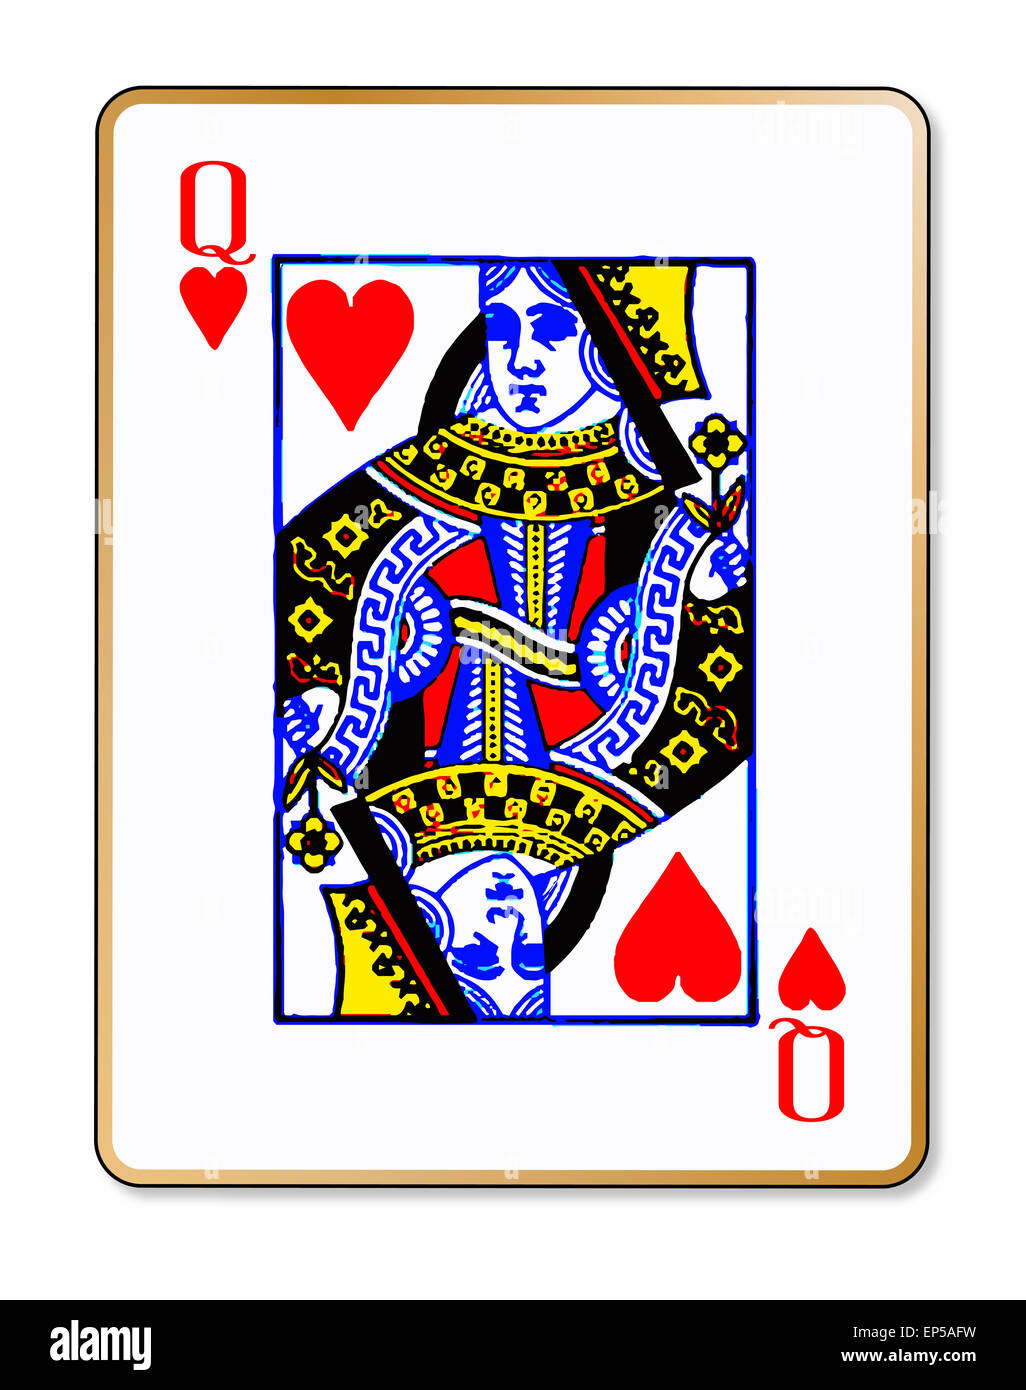 La carte à jouer la reine de coeur sur un fond blanc Banque D'Images